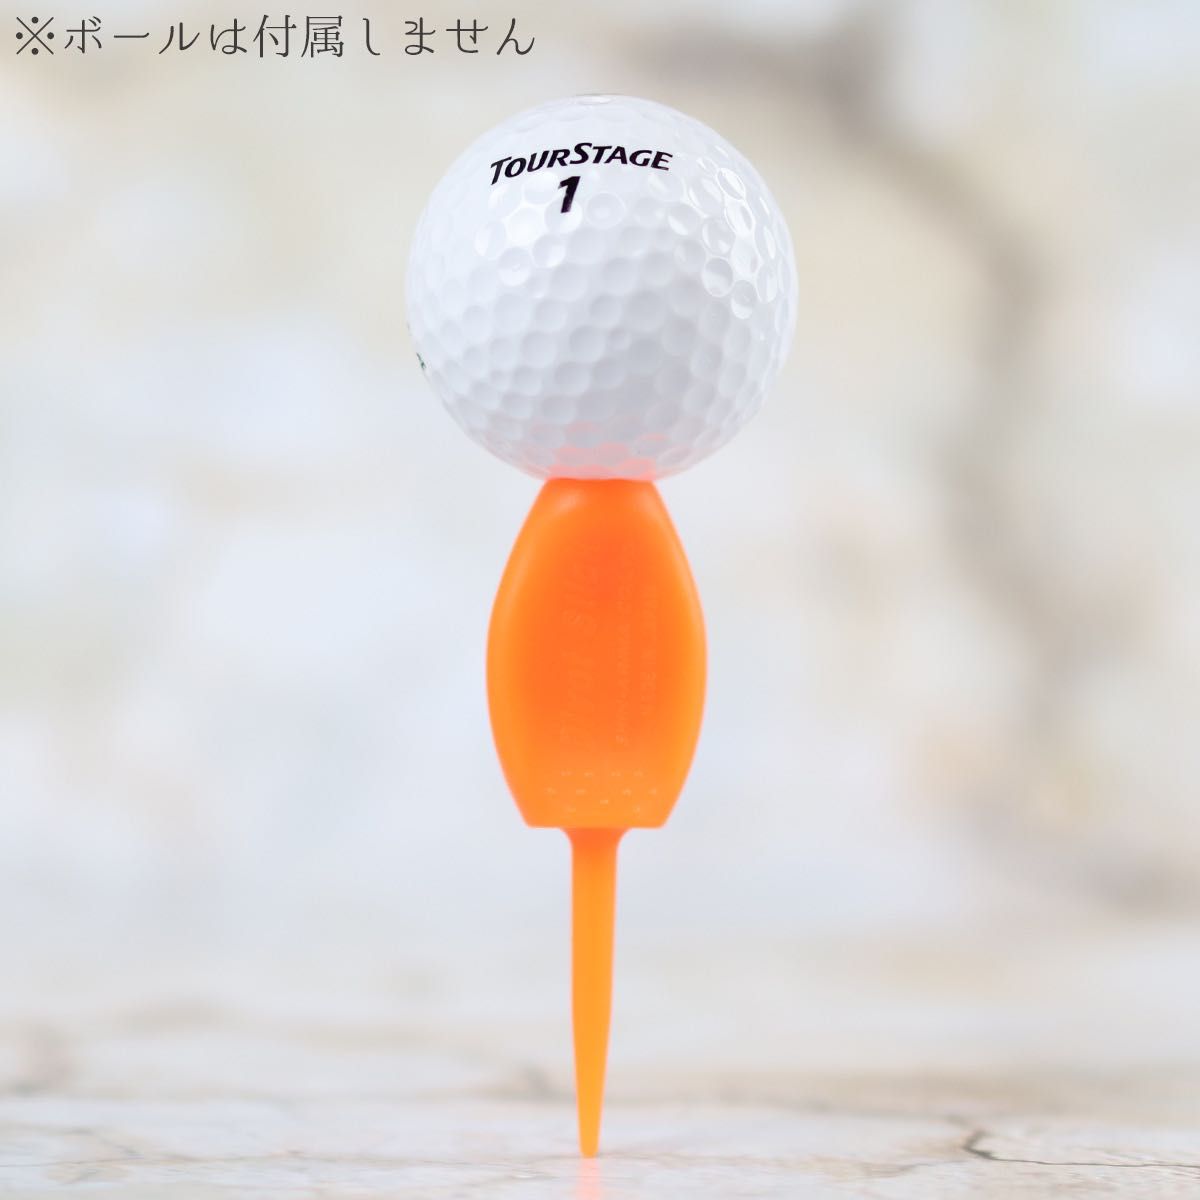 4本セット パリティー 蛍光色 オレンジ色 ゴルフボール 跡 マーク ゴルフティー ティーペグ グリーンフォーク b098o